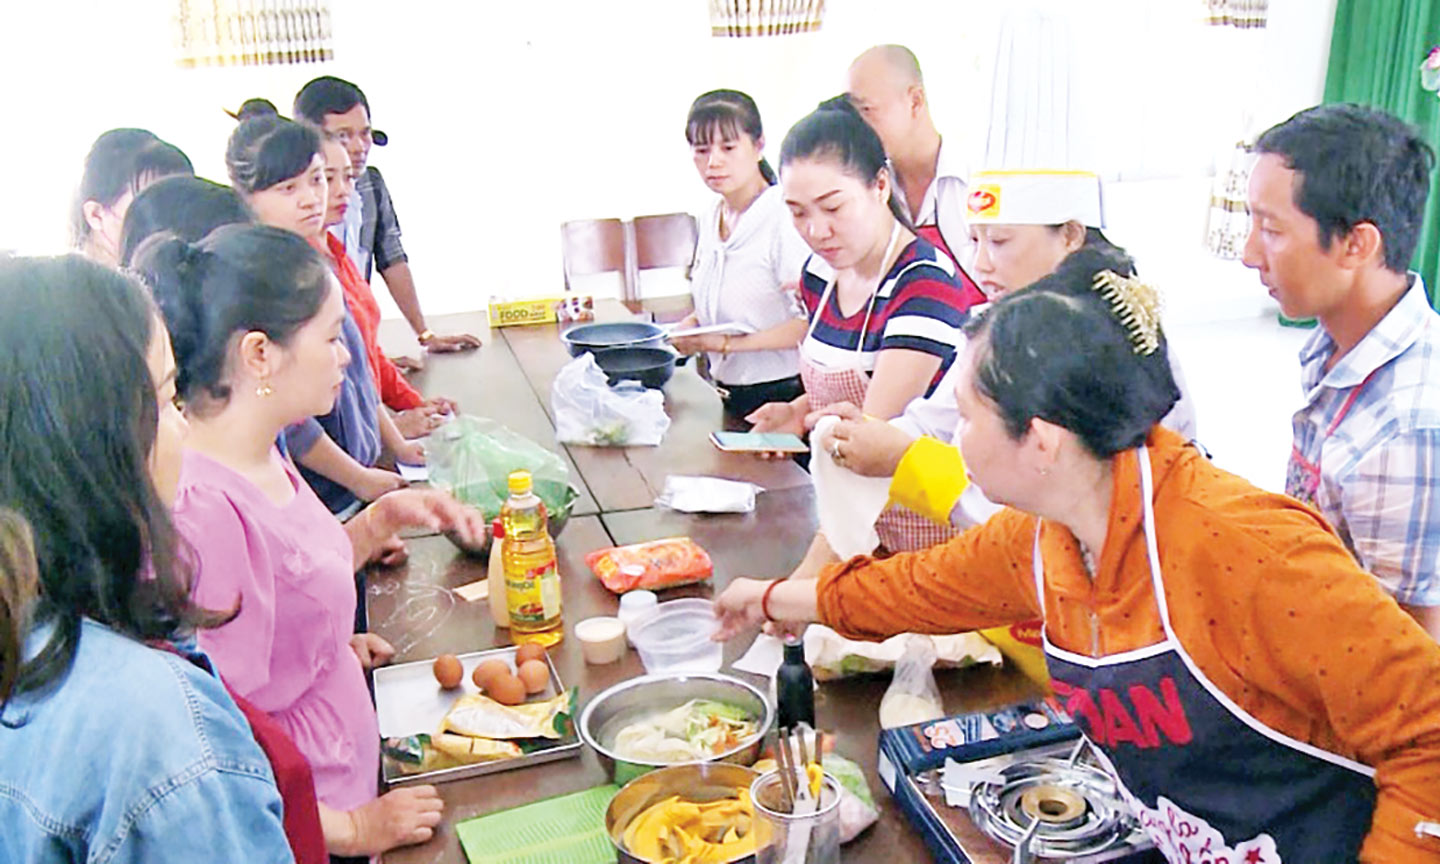 Lớp Đào tạo nghề nấu ăn, được tổ chức tại Trung tâm Dịch vụ việc làm  Tiền Giang (Cơ sở 2).